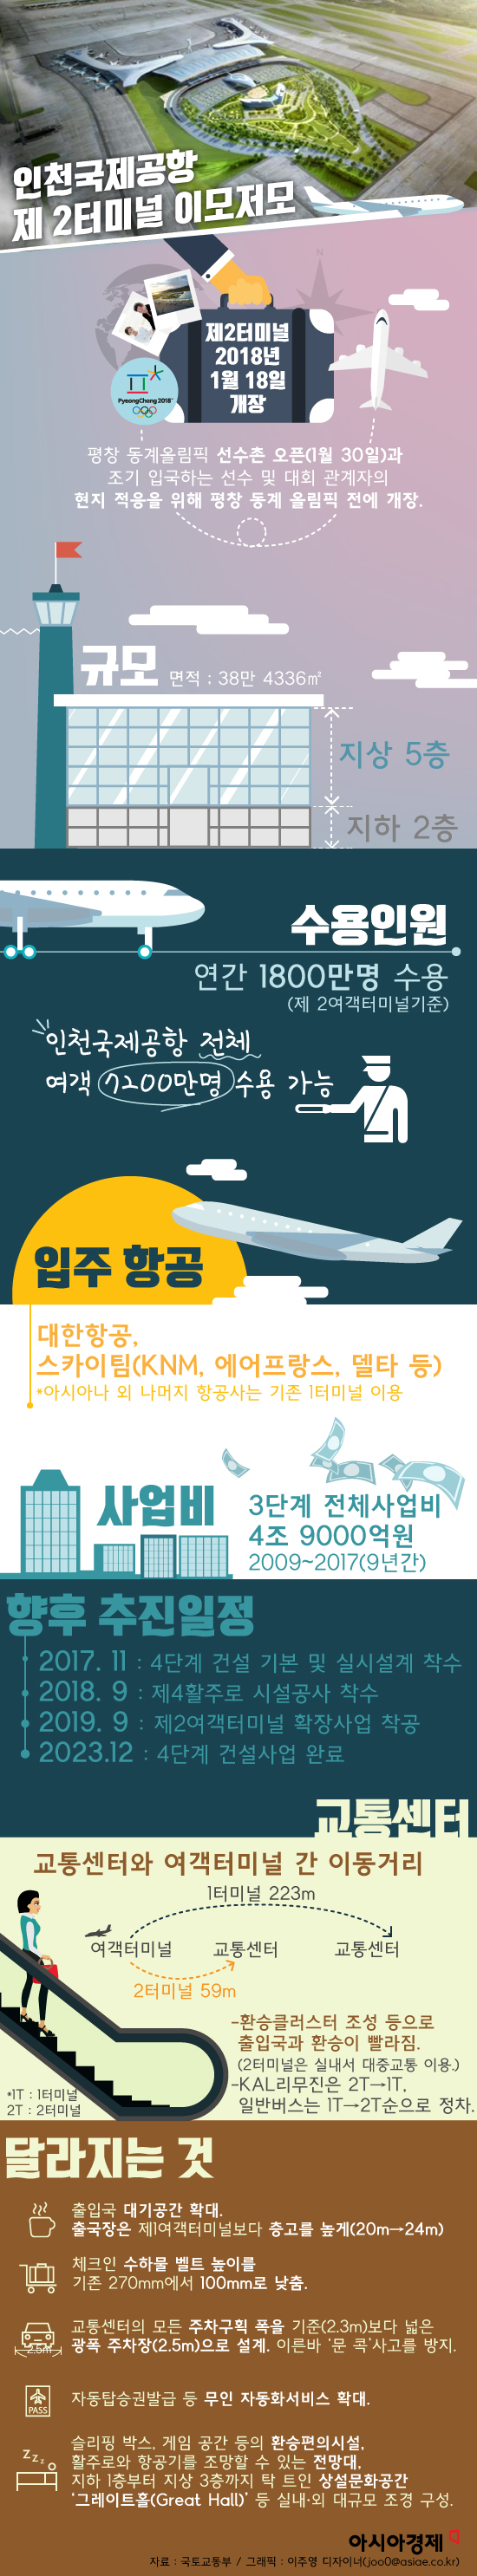 [그래픽] 인천국제공항 제2여객터미널